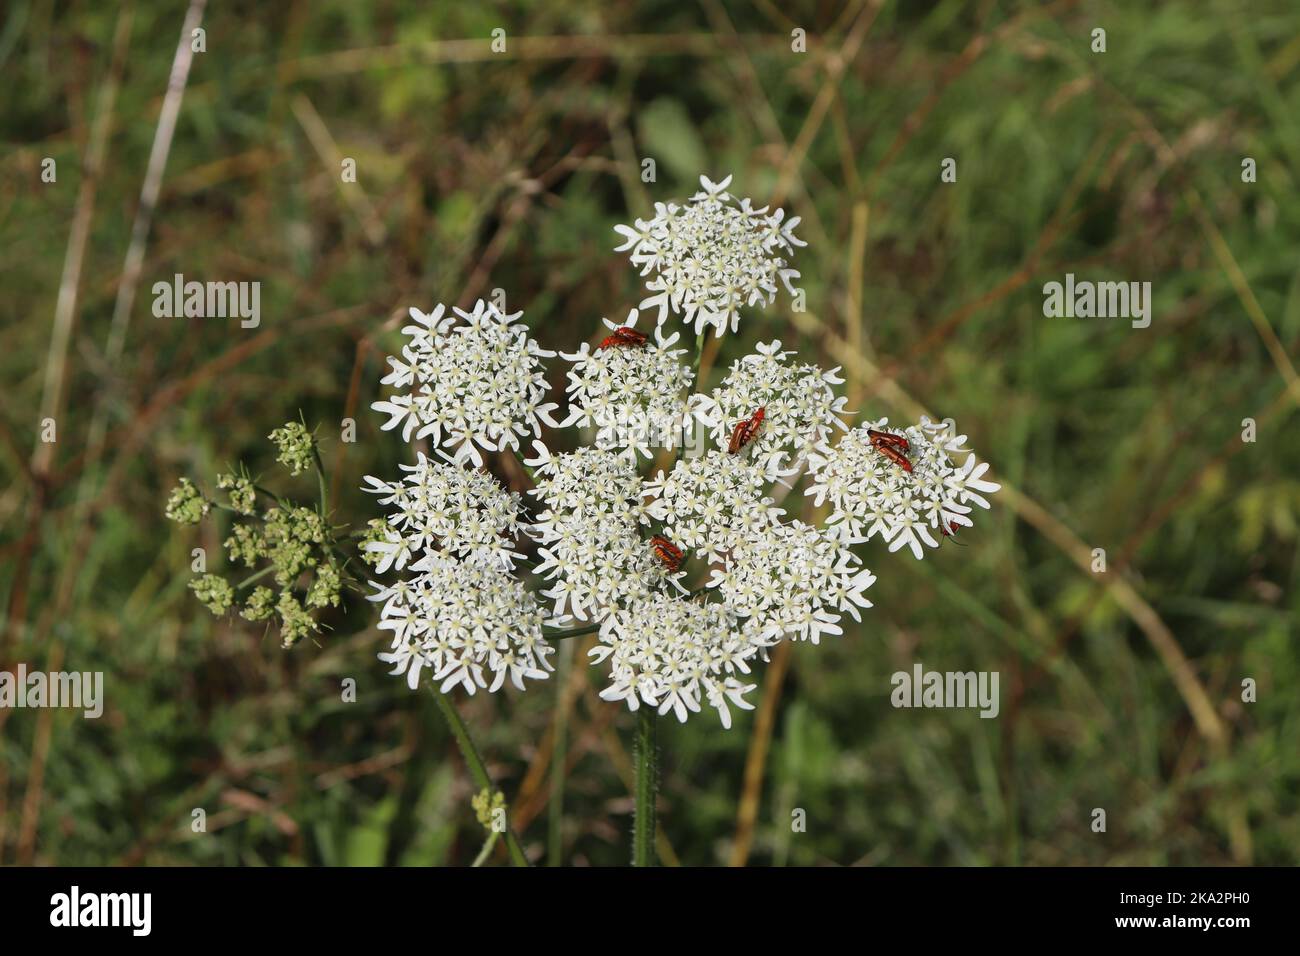 Schaafgarbe weiße Wildblume als Lebensraum von Insekten - Käfer auf weißer Blüte einer wild wachsenden Blume Stock Photo